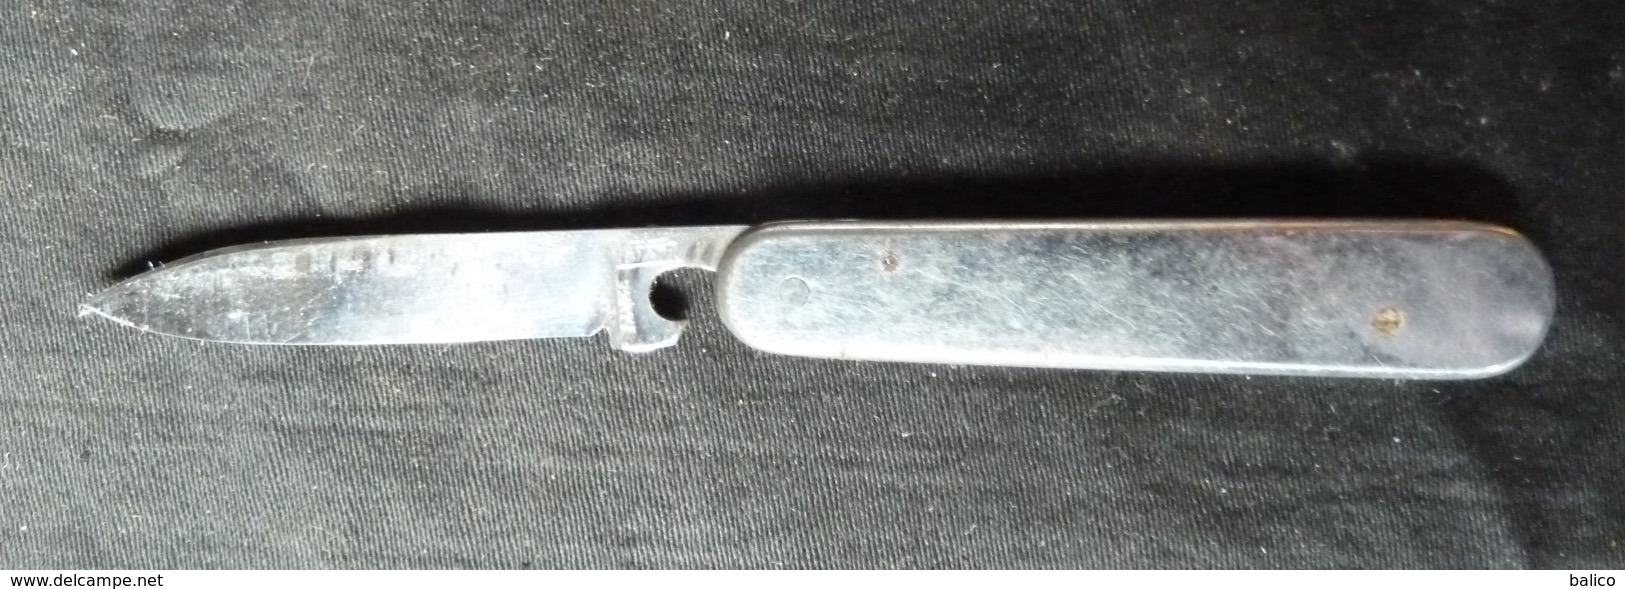 Couteau De Poche - Publicité OLIDA à System D'ouverture Par Une Bille Qui Vas Et Viens à L'intérieur - Knives